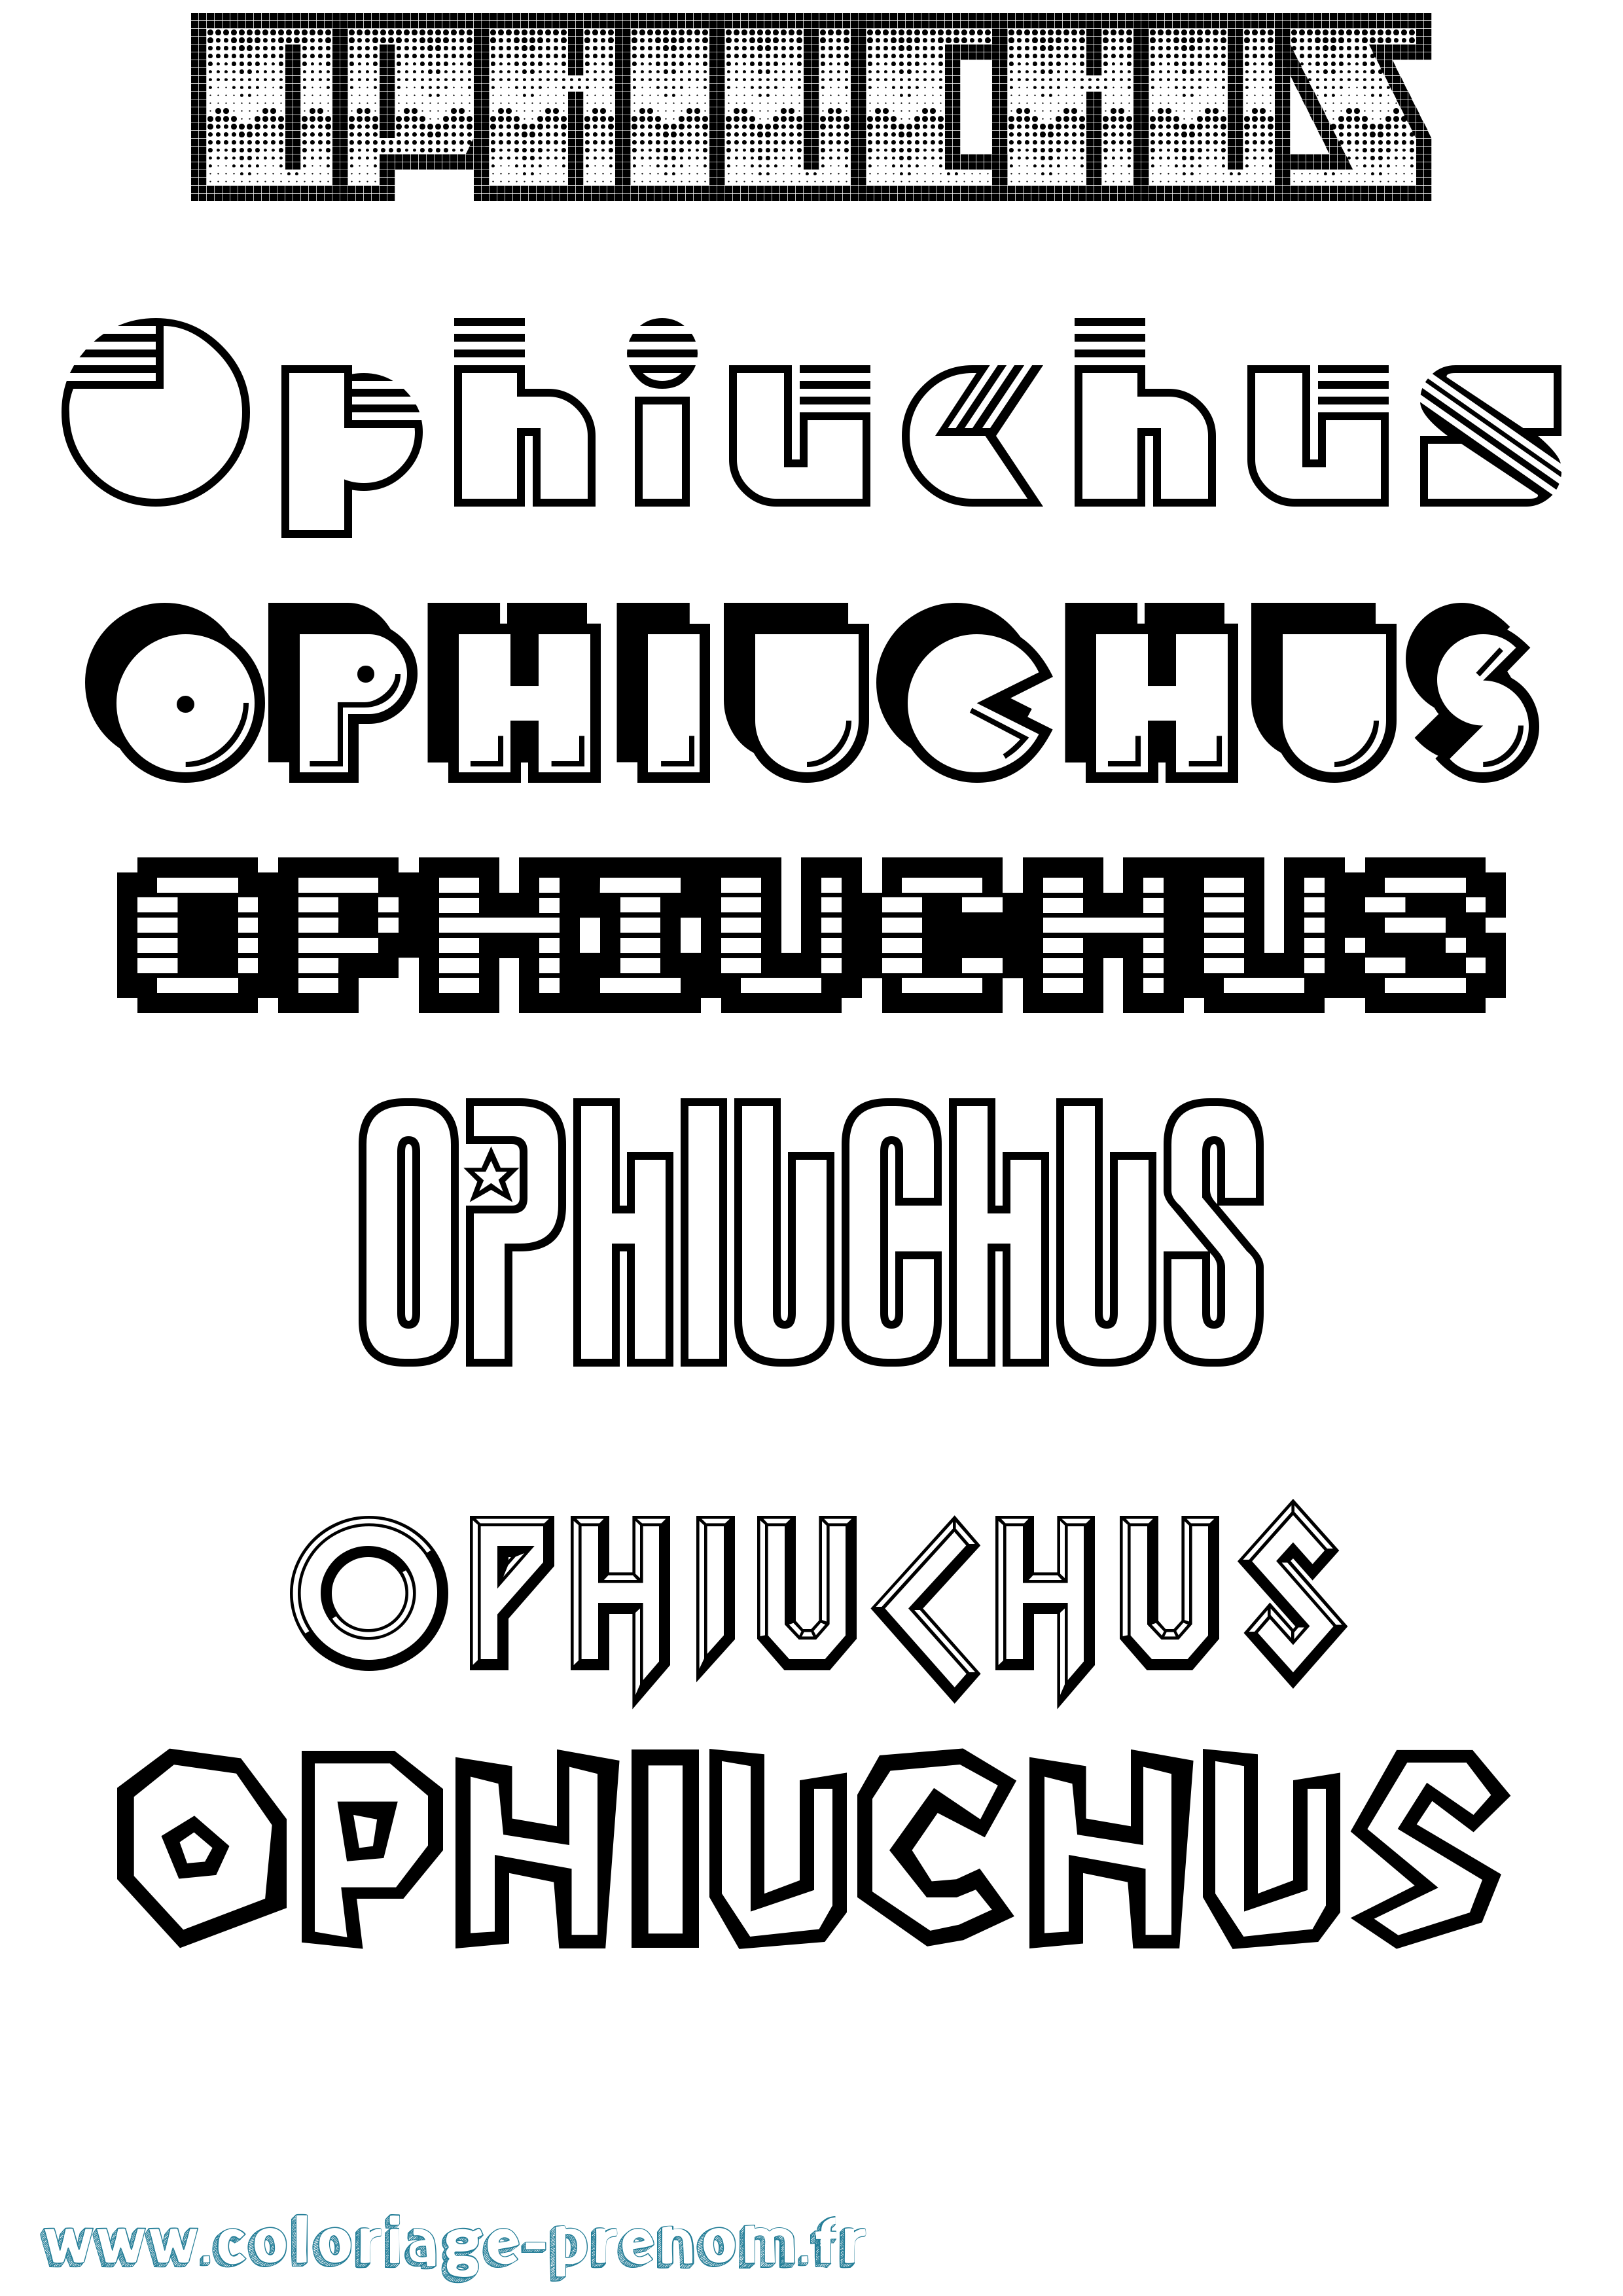 Coloriage prénom Ophiuchus Jeux Vidéos